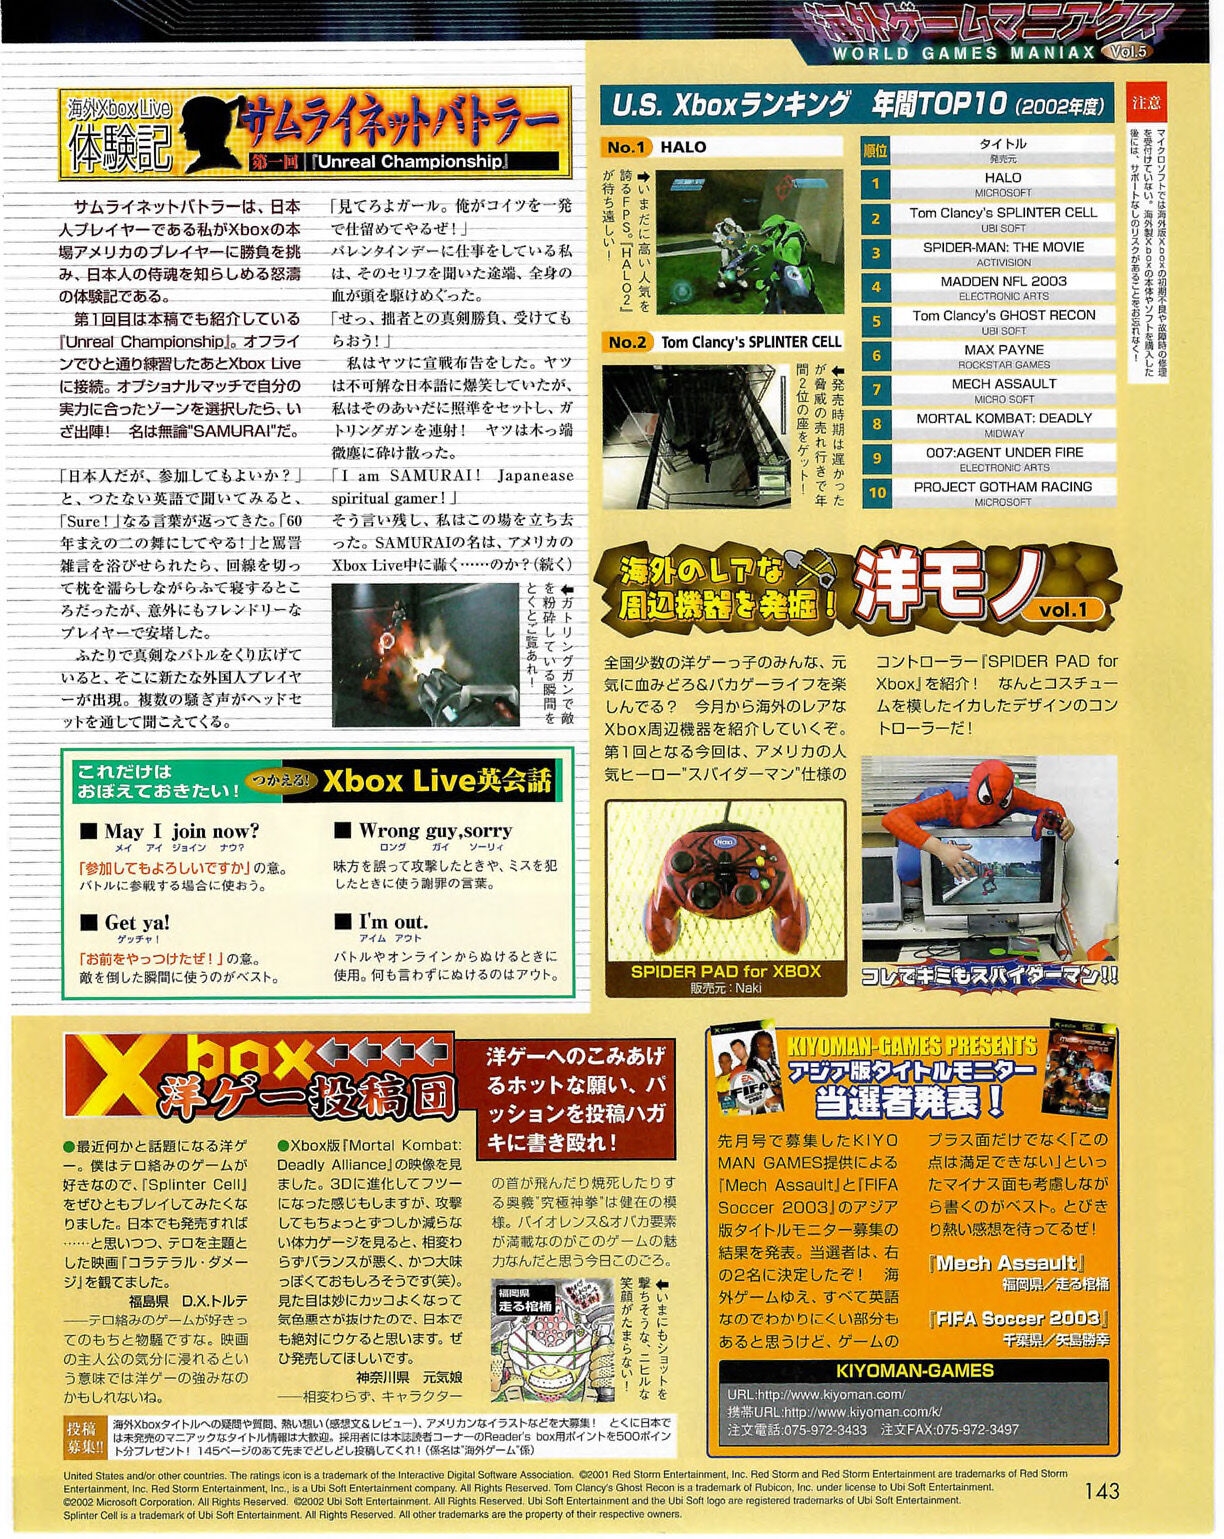 Famitsu_Xbox_2003-04_jp2 142